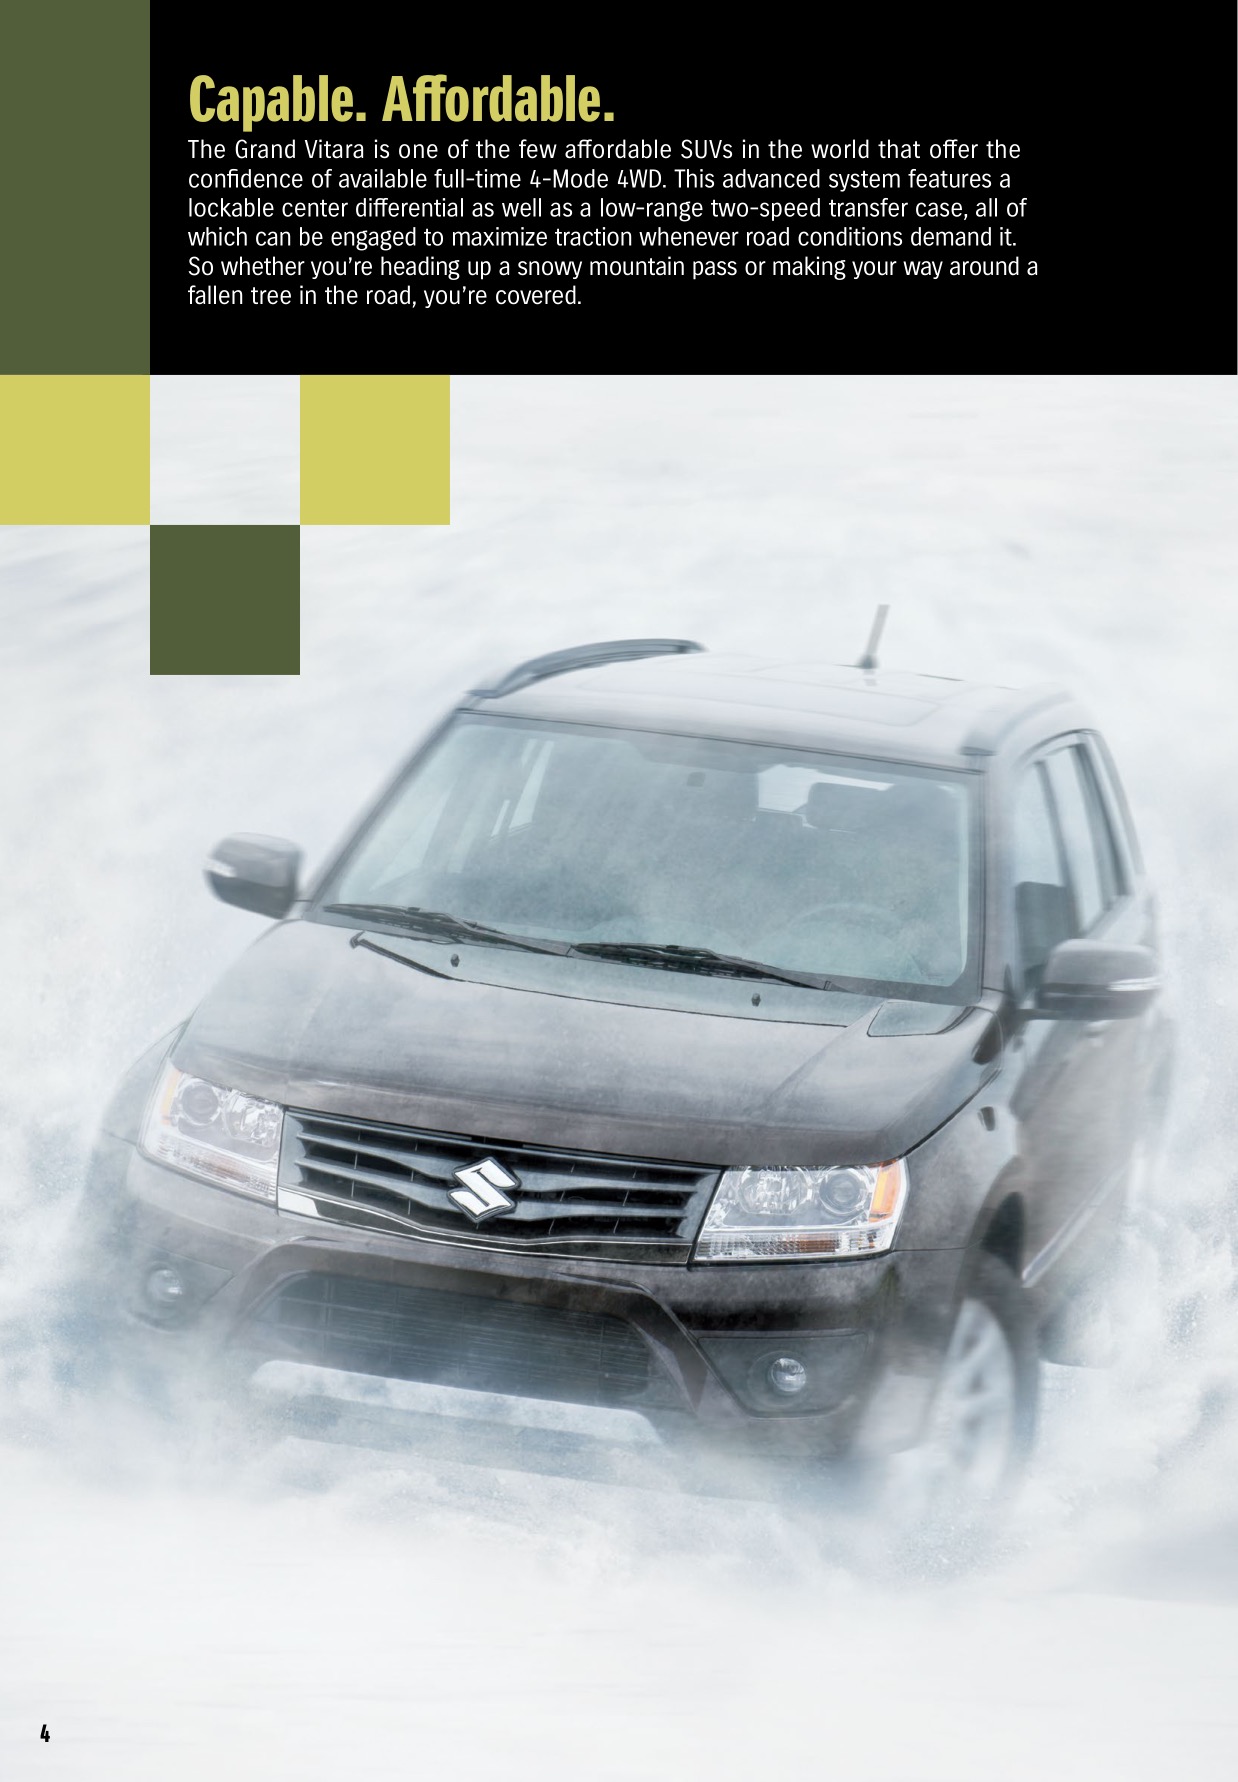 2013 Suzuki Grand Vitara Brochure Page 7